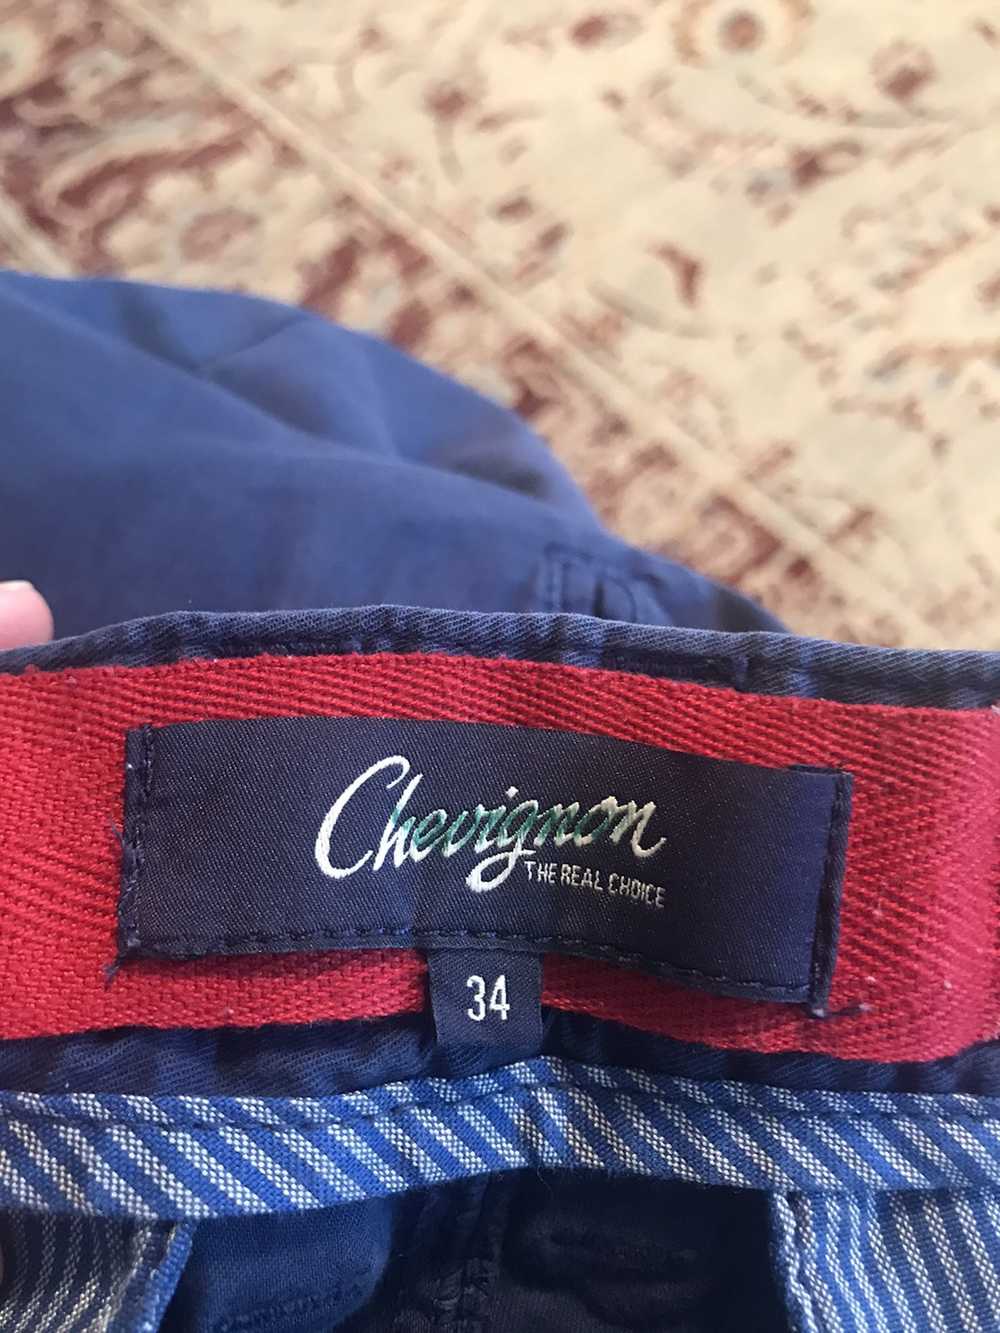 Chevignon Slim Fit FF Chino’s - image 7